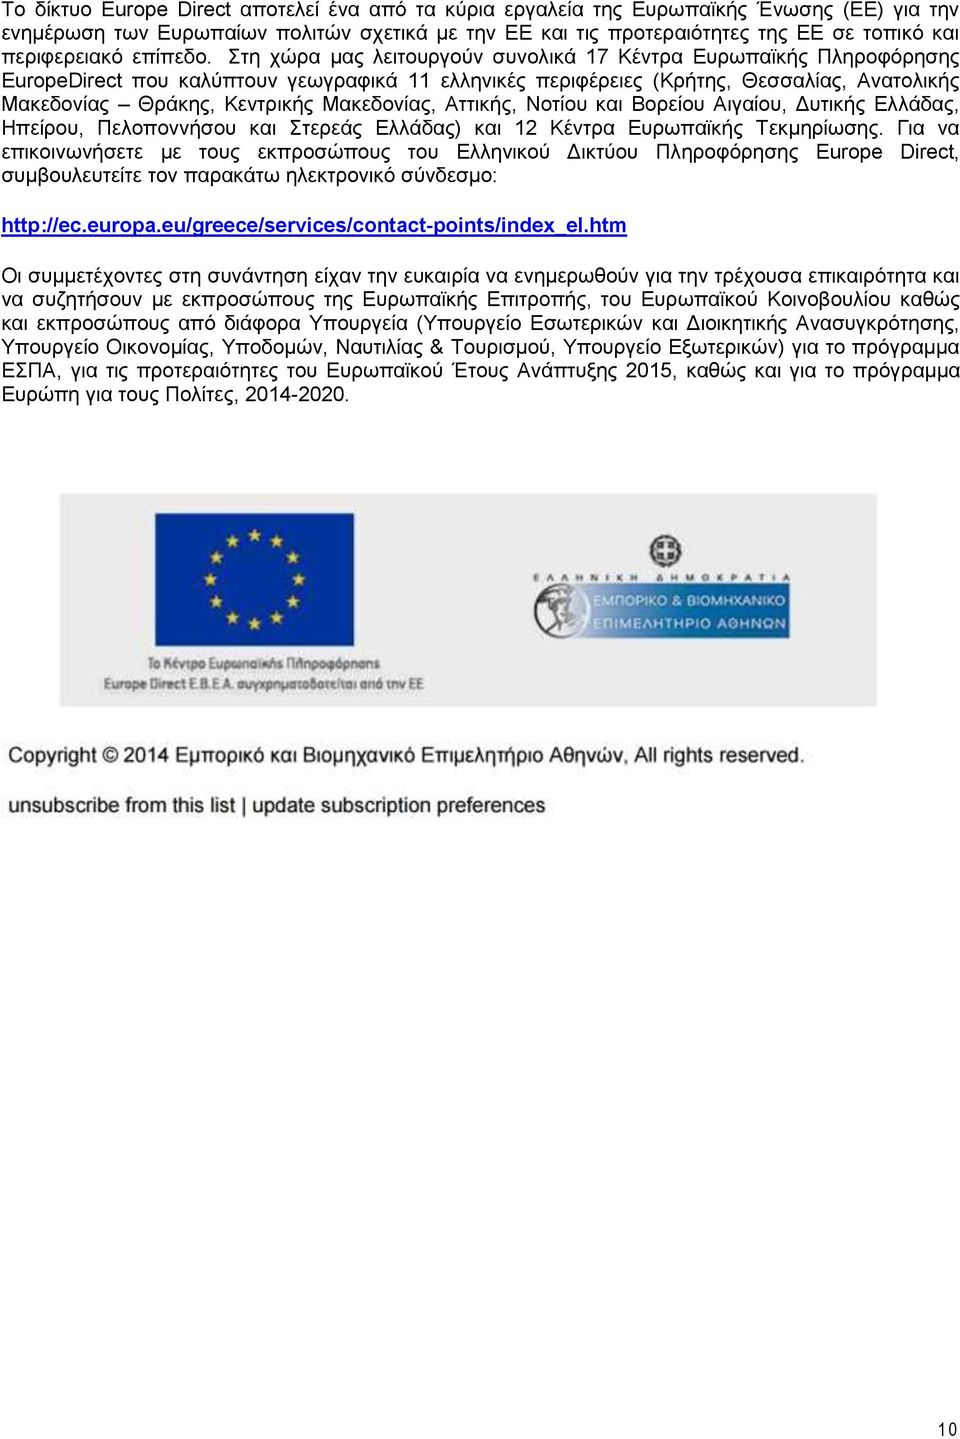 Στη χώρα μας λειτουργούν συνολικά 17 Κέντρα Ευρωπαϊκής Πληροφόρησης EuropeDirect που καλύπτουν γεωγραφικά 11 ελληνικές περιφέρειες (Κρήτης, Θεσσαλίας, Ανατολικής Μακεδονίας Θράκης, Κεντρικής